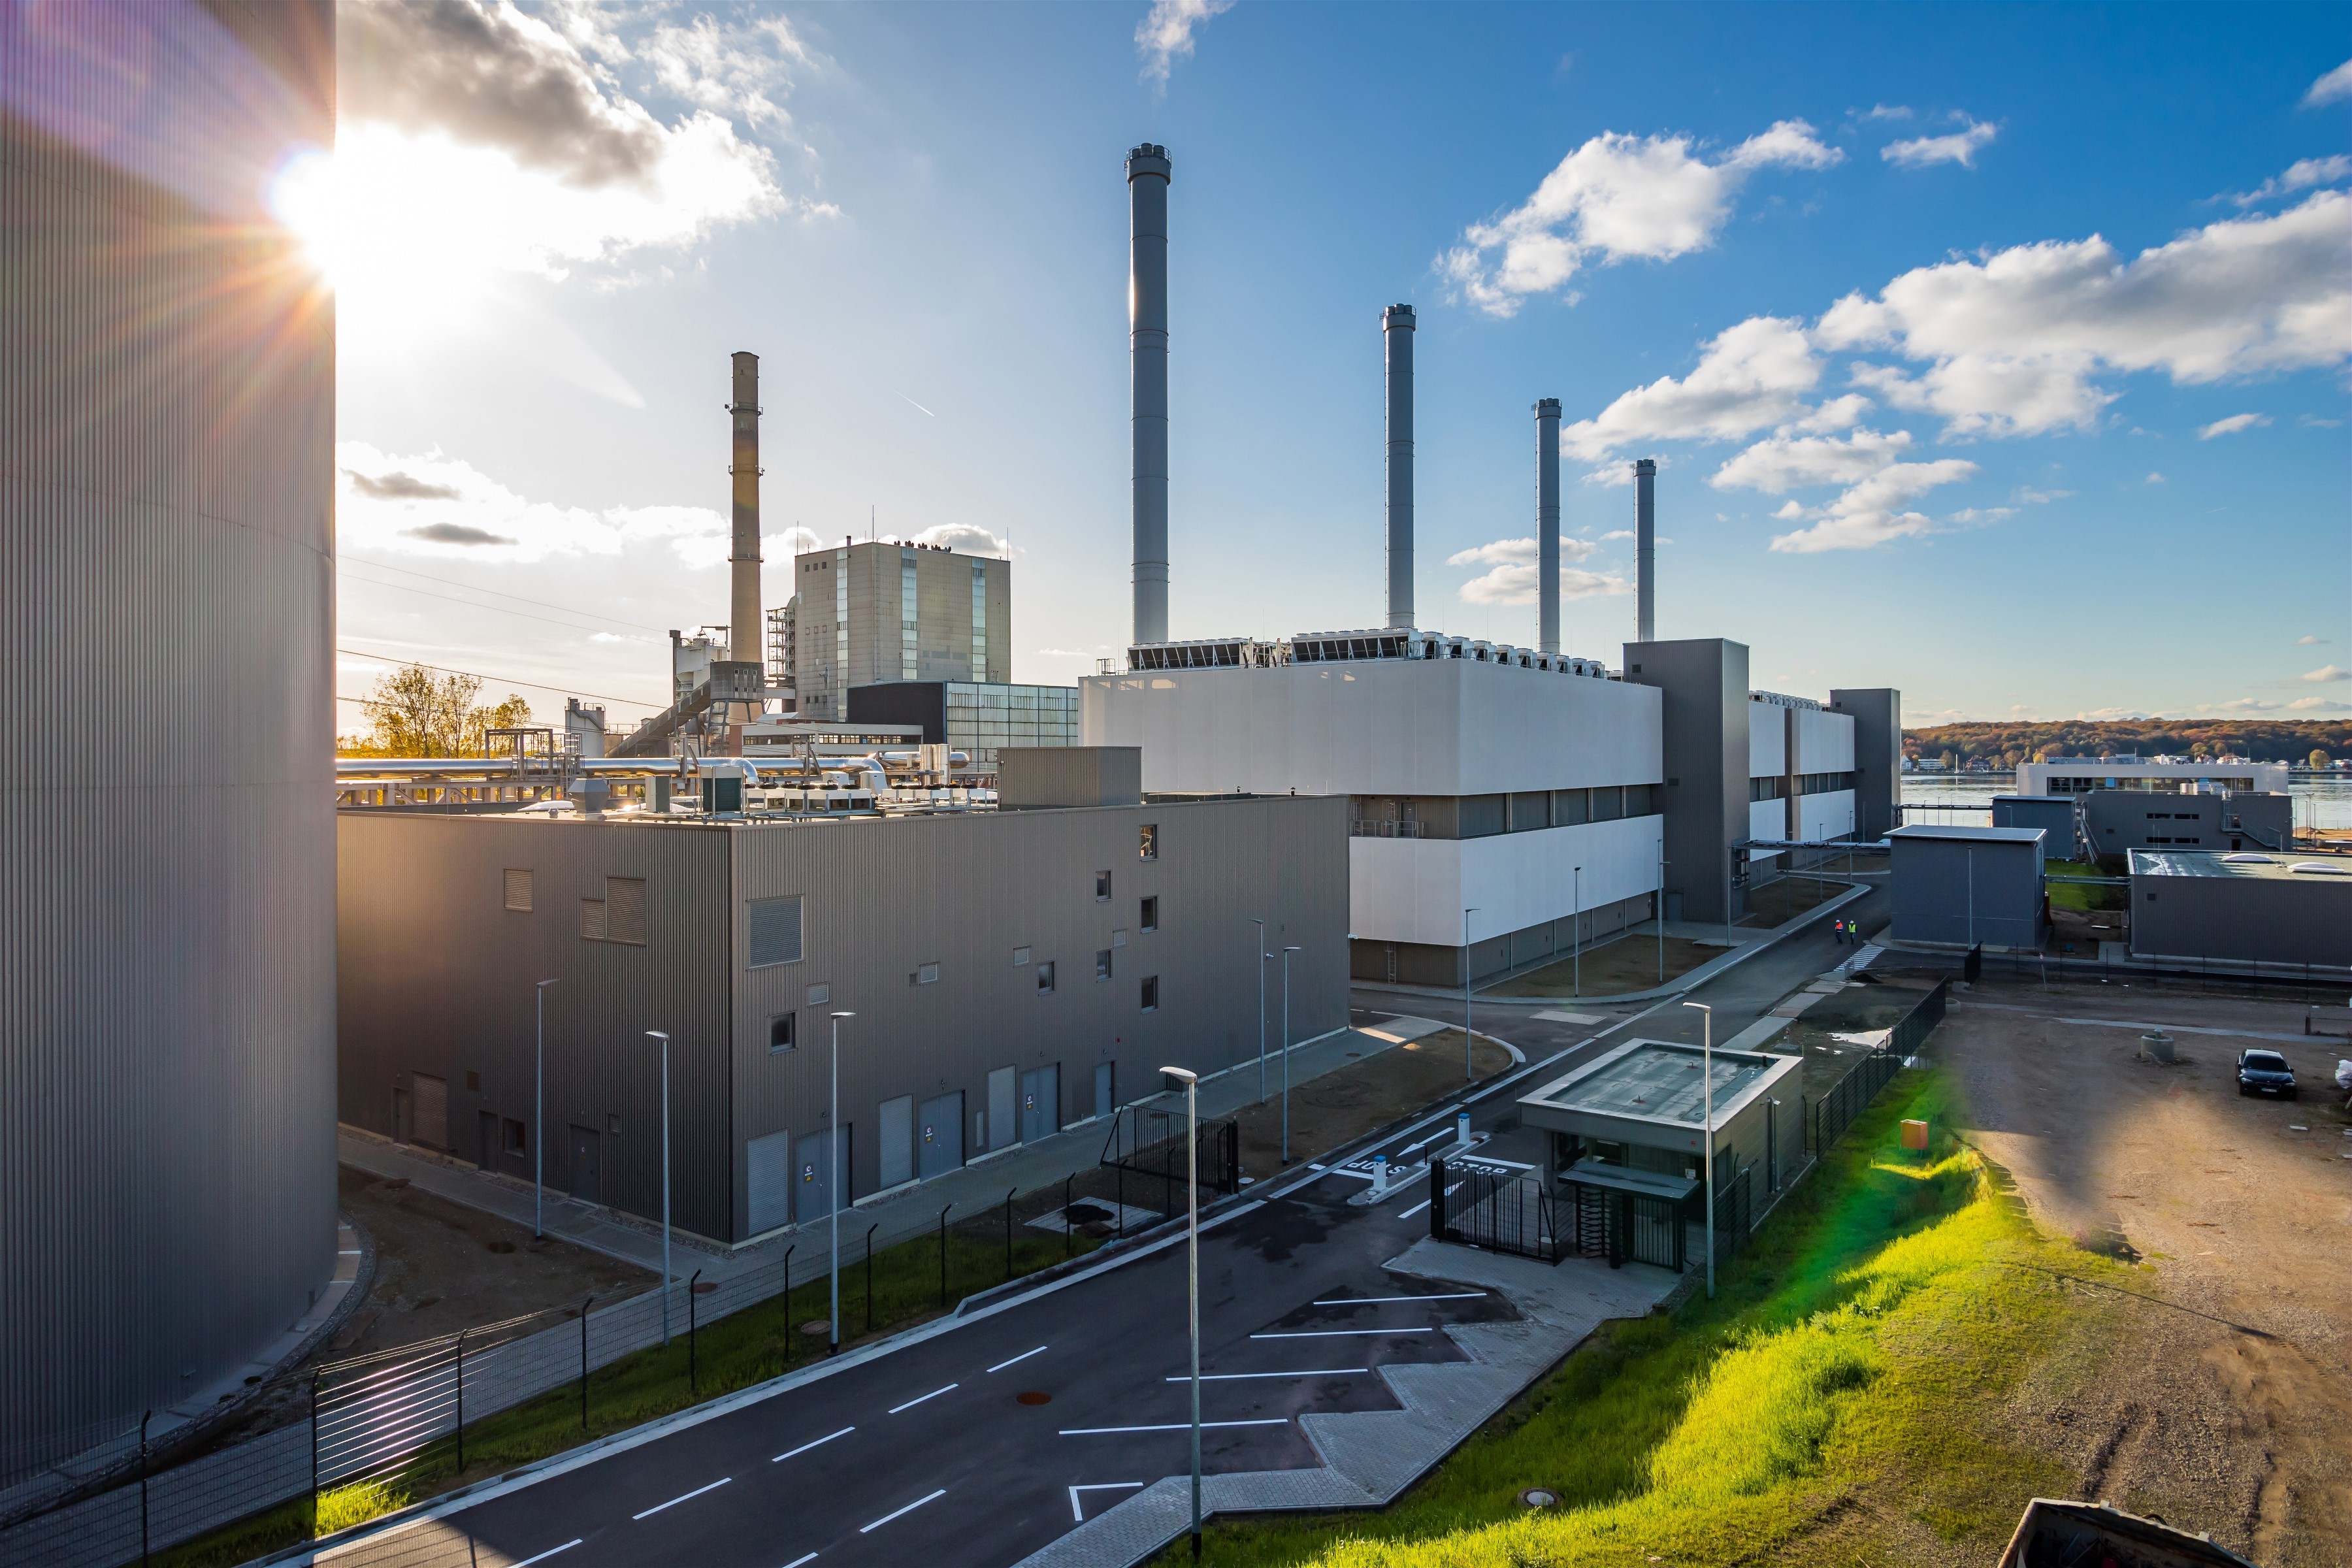 Riassunto: La Germania sostituisce una centrale elettrica a carbone aprendo una delle centrali elettriche a gas più moderne d'Europa | Business Wire